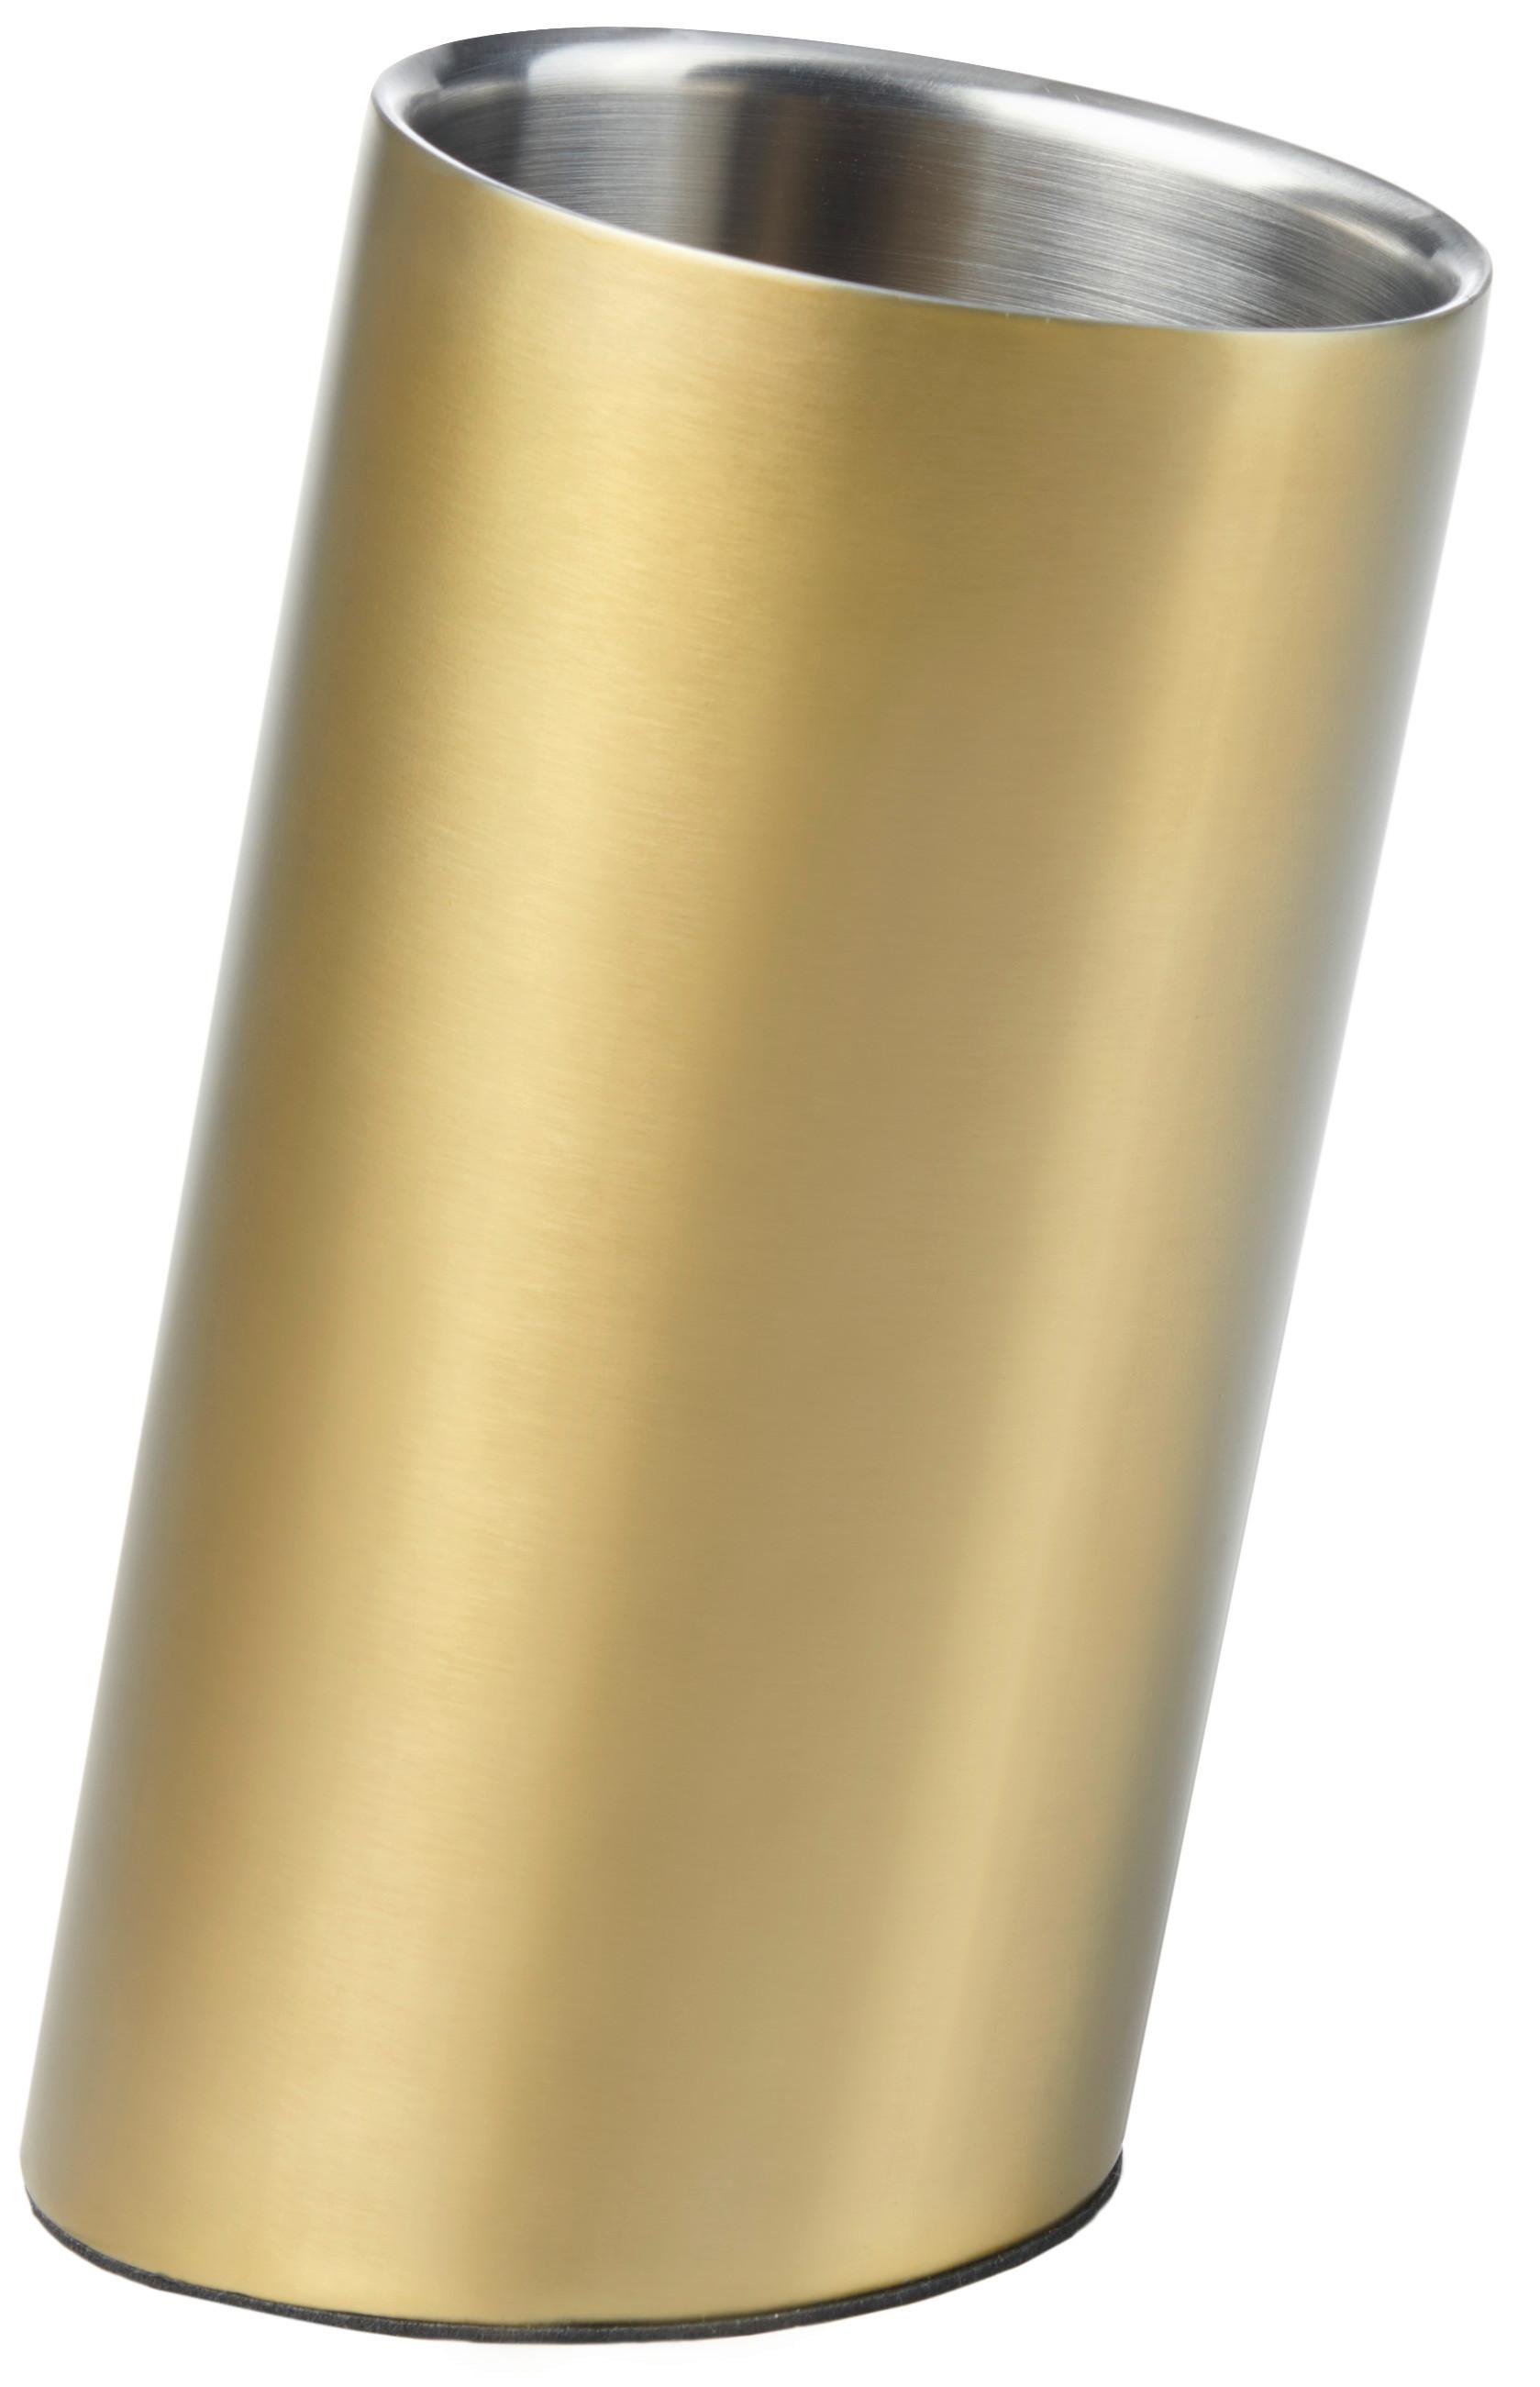 Chladič Na Víno Glamour - barvy zlata, Moderní, kov/plast (12/23,5cm) - Premium Living